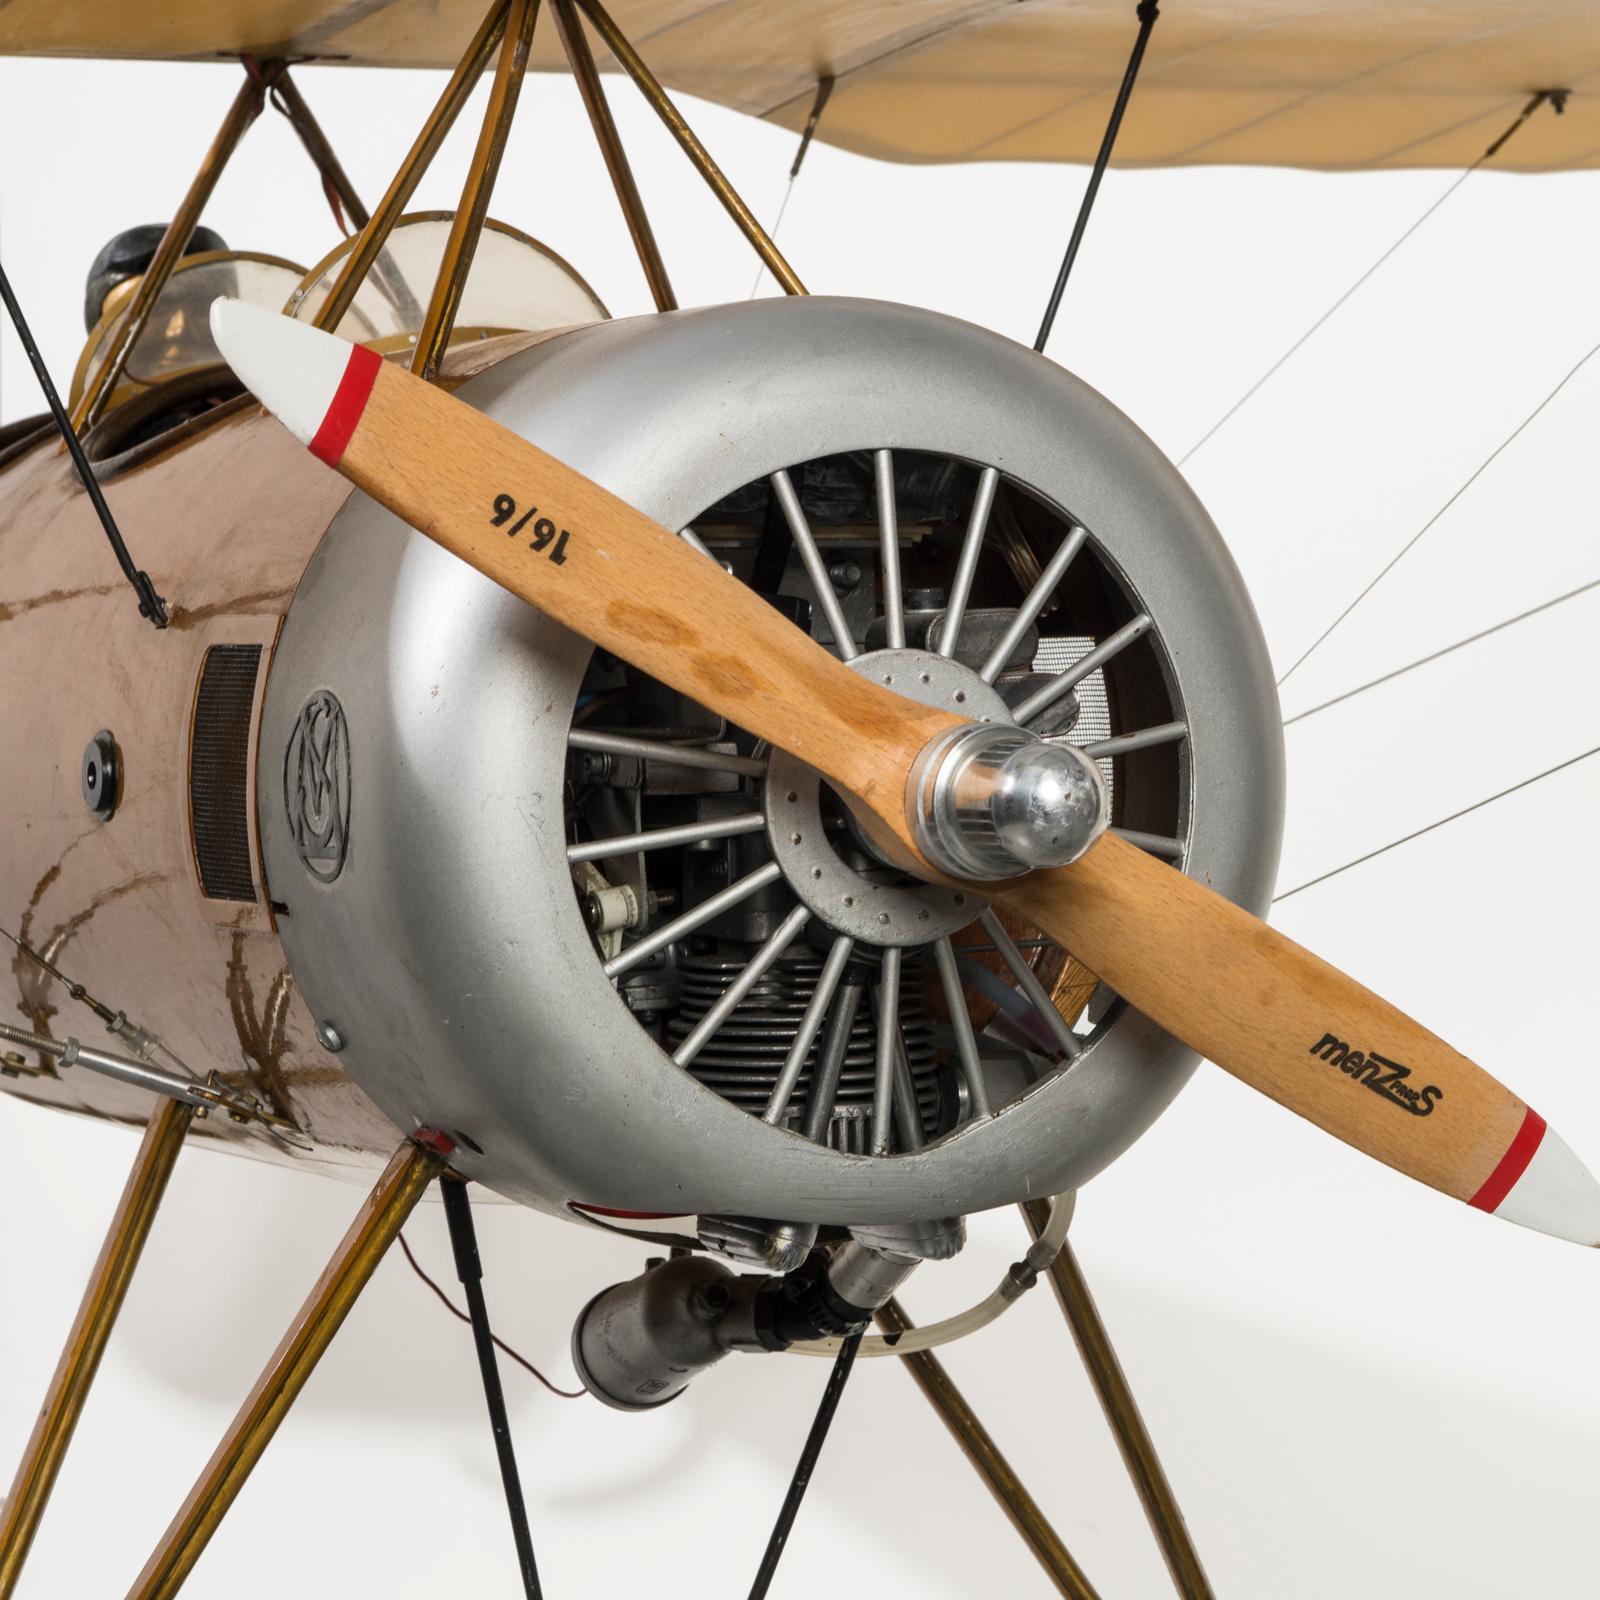 Magnifique maquette d'avion à grande échelle de l'époque de la Première Guerre mondiale, avec un moteur en état de marche. Capturez l'essence de l'histoire de l'aviation et de l'artisanat avec cette étonnante maquette d'avion vintage construite à la